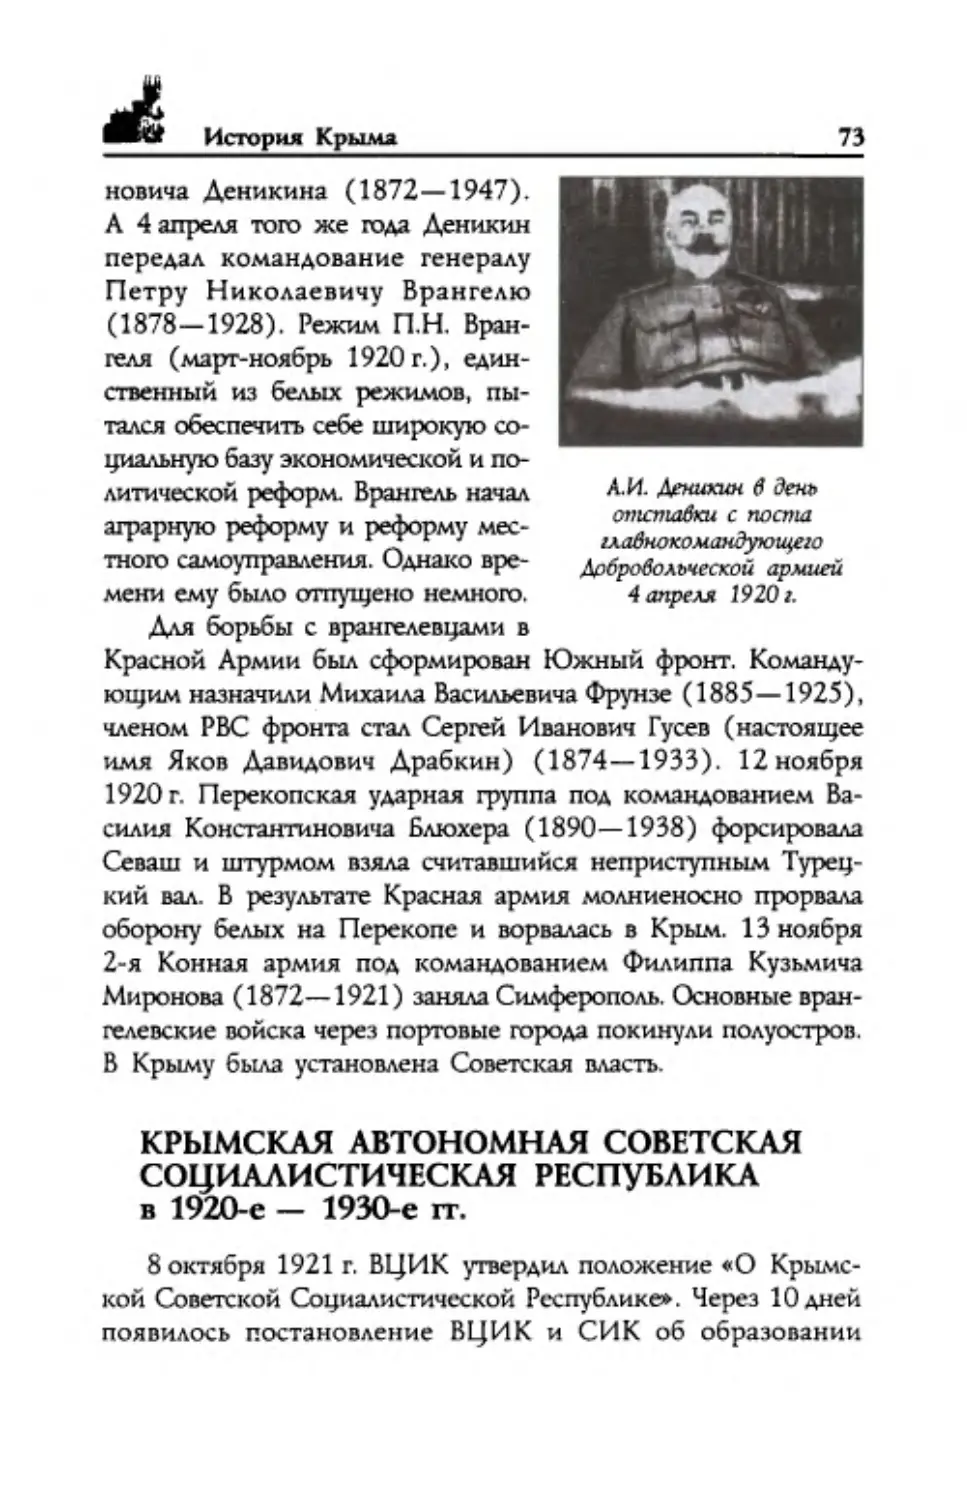 ﻿Крымская Автономная Советская Социалистическая Республика в 1920-е — 1930-е г